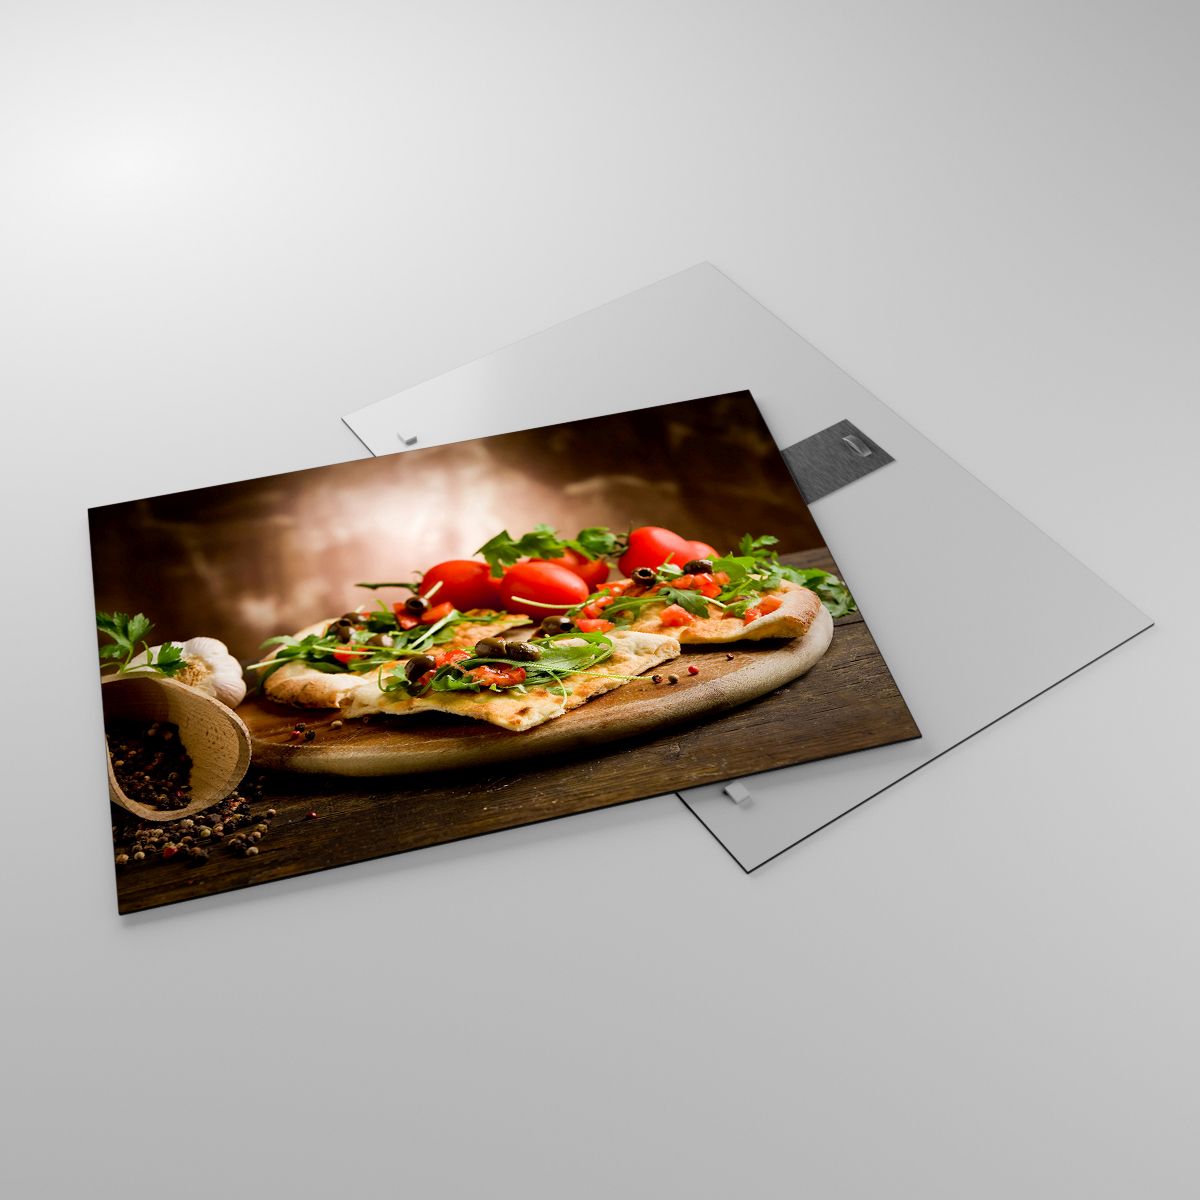 Impression La Gastronomie, Impression Pizza, Impression Italie, Impression Cuisine, Impression Tomates